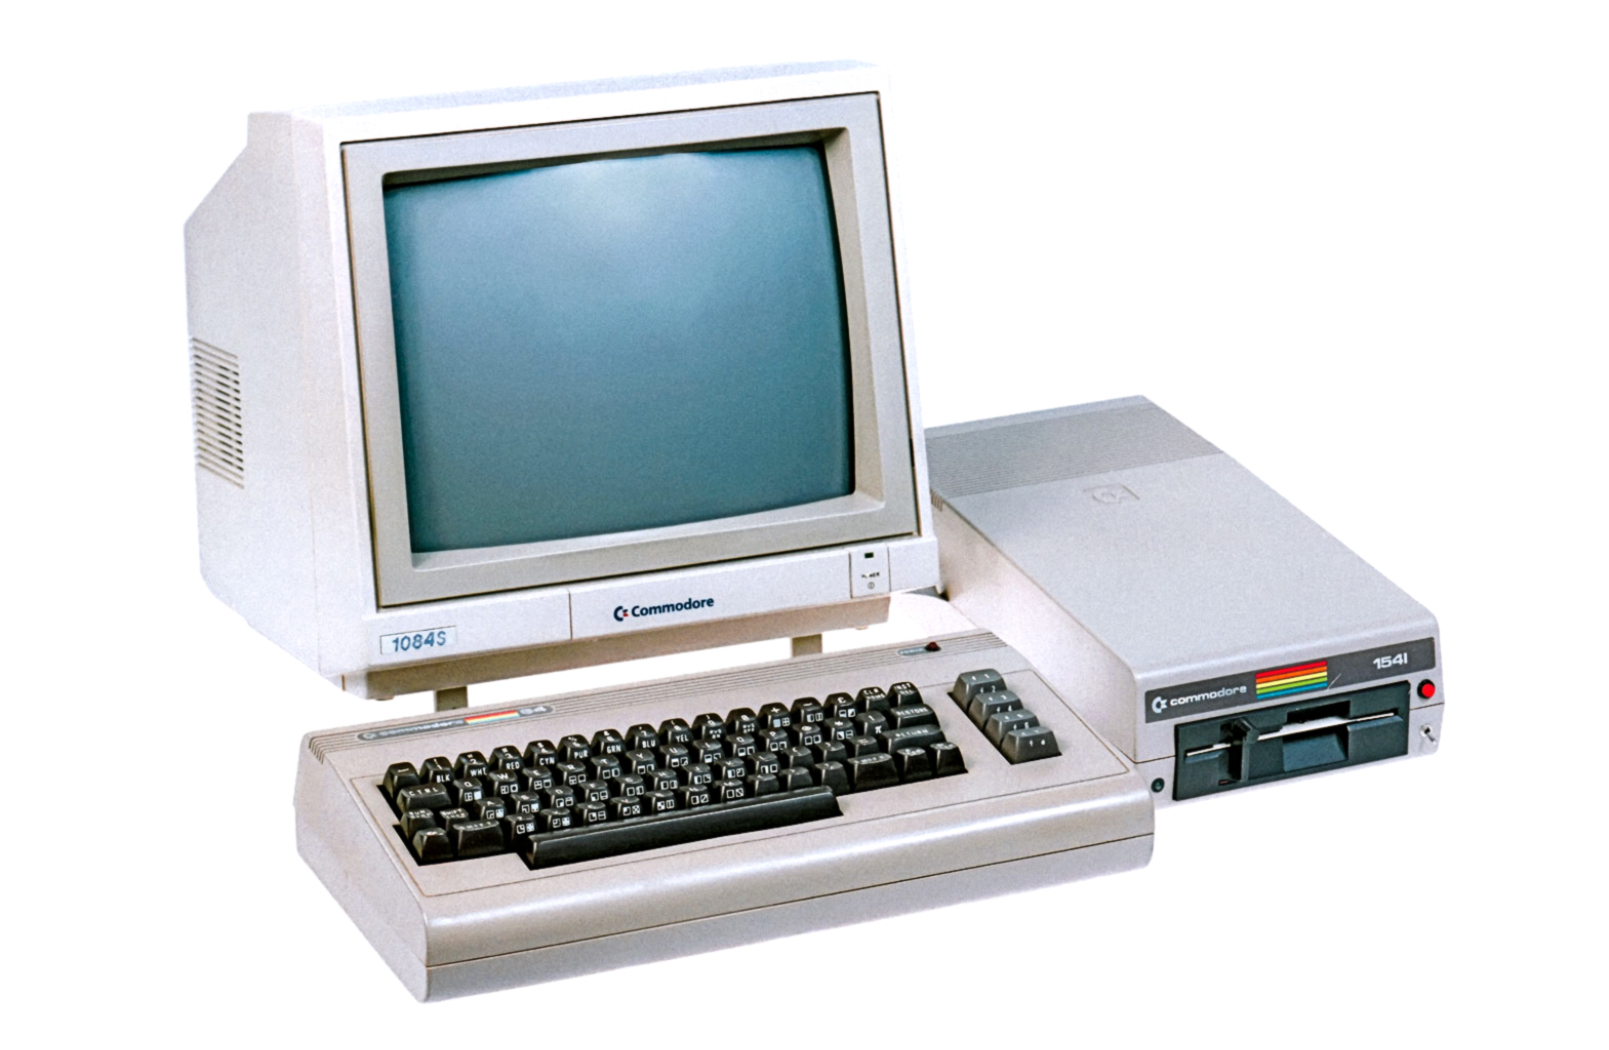 8 персональные компьютеры. Монитор Commodore 64. Компьютер Атари 1984 год. ЭВМ «Commodore Vic-20». Commodore 1084s.